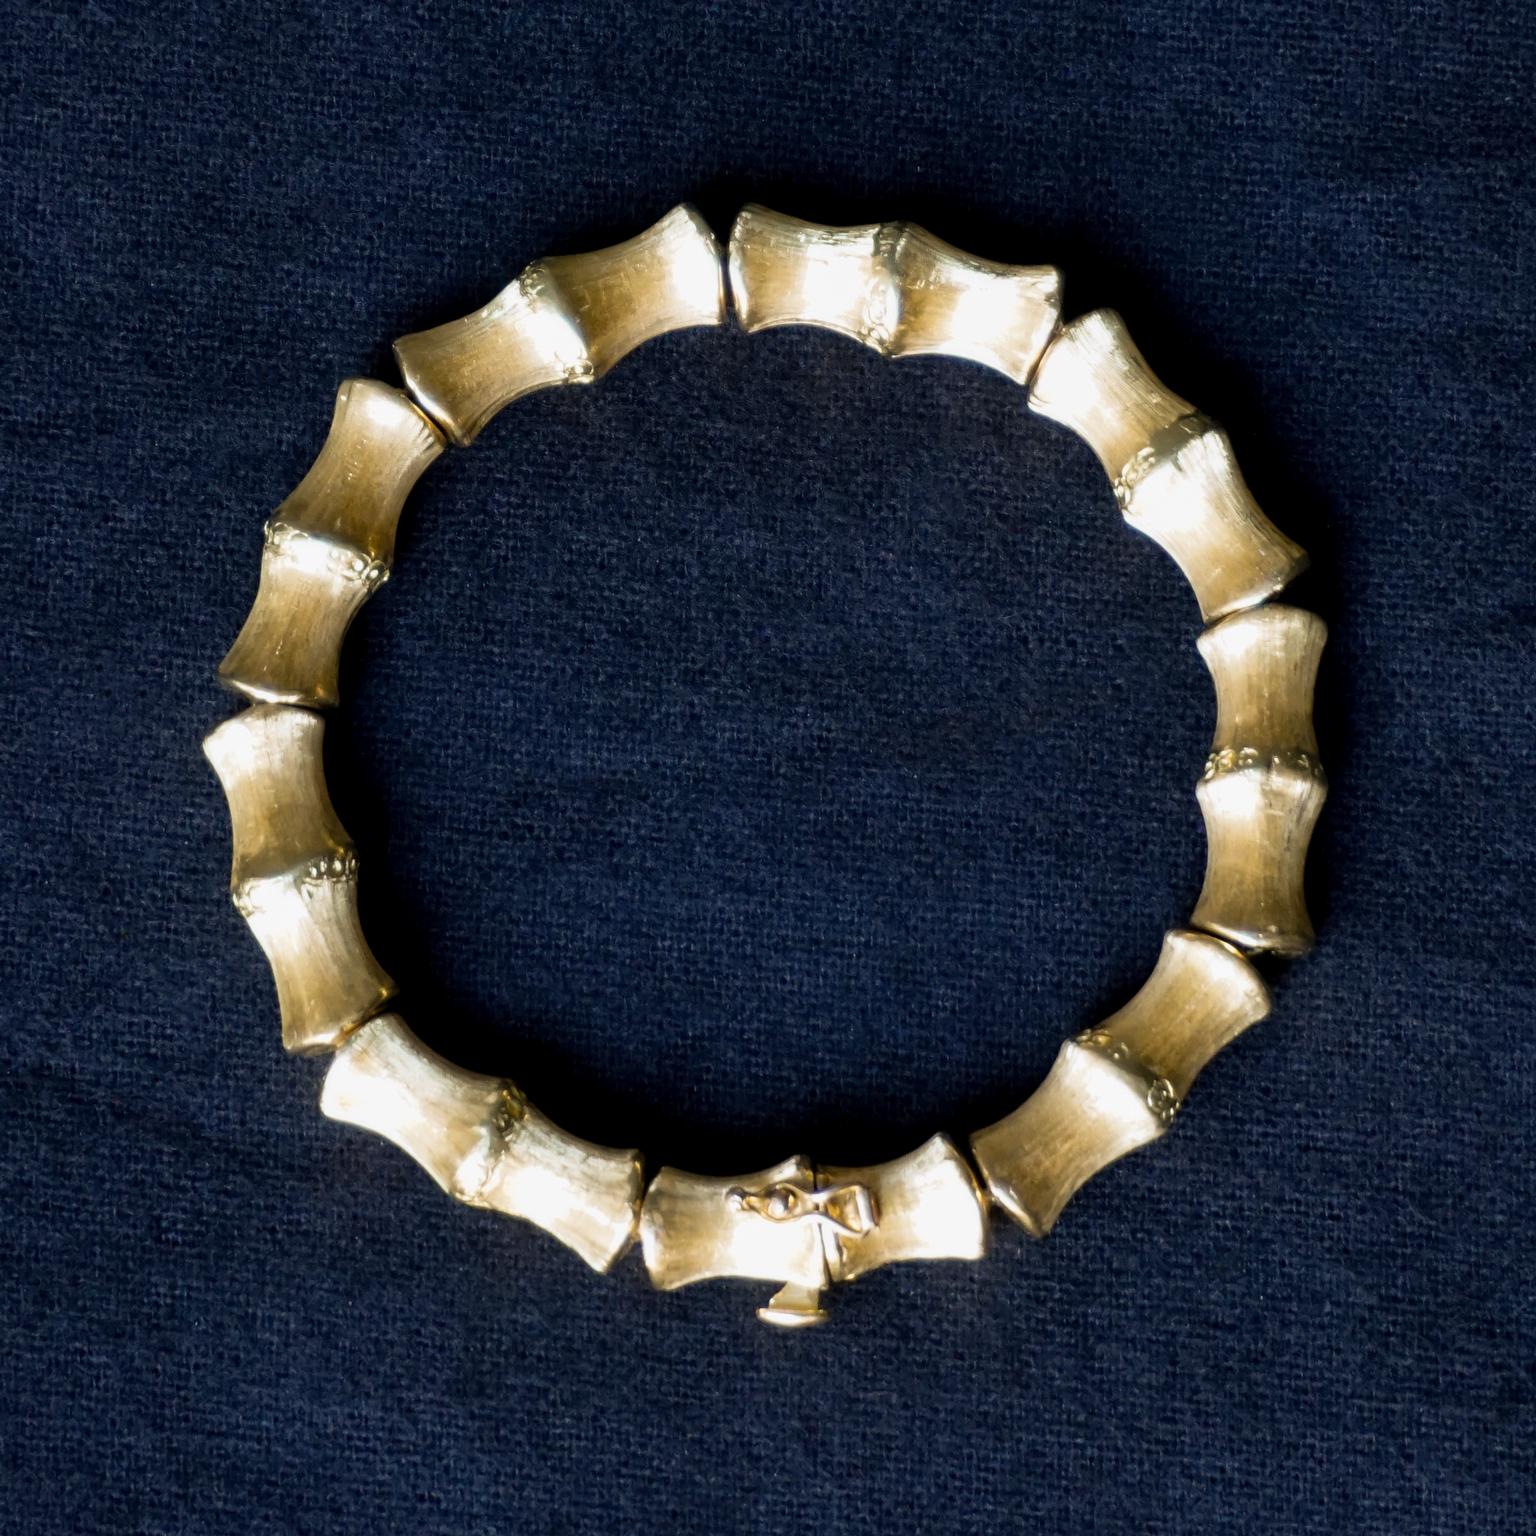 Bracelet classique vintage en faux bambou en or 18 carats, de fabrication italienne, Vincenza.
Constitué de neuf segments de bambou gravés et brossés en or qui, une fois fermés, forment un bracelet bangle en or massif (33gr) d'un diamètre de 6cm